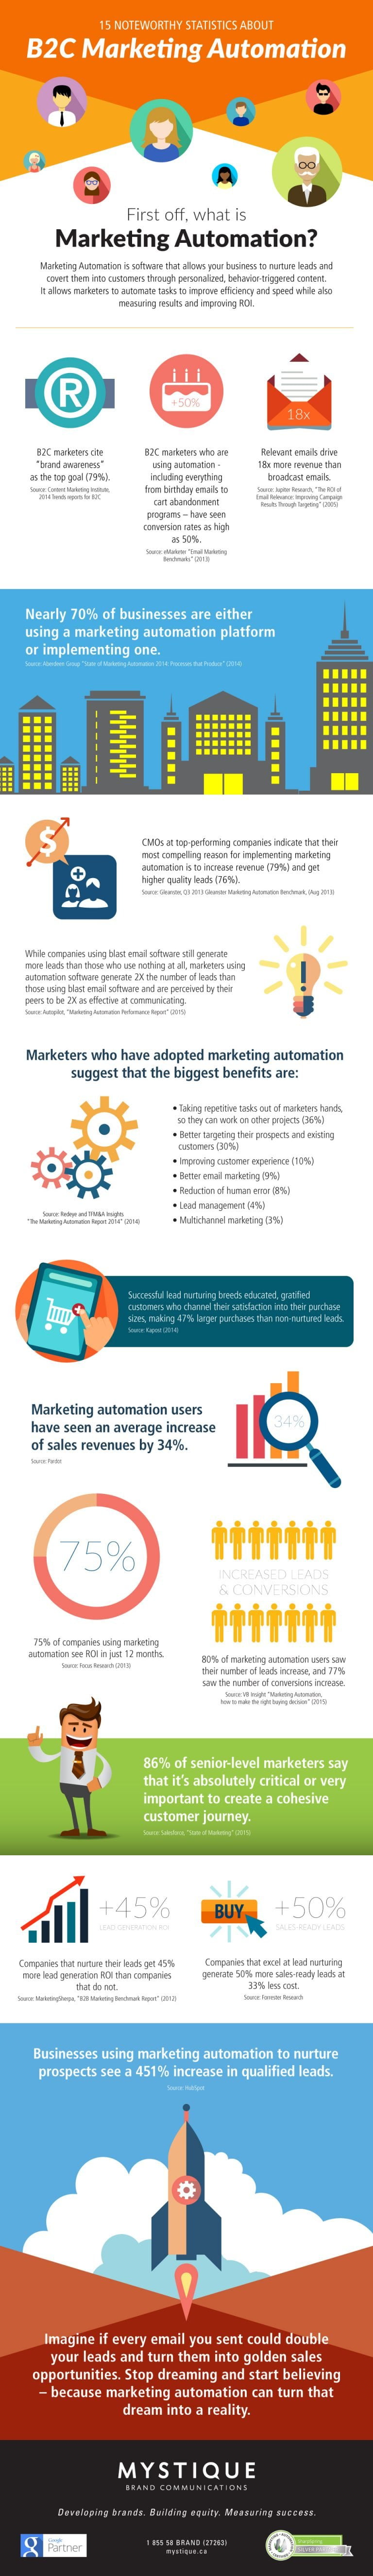 Statistics about B2C Marketing Automation